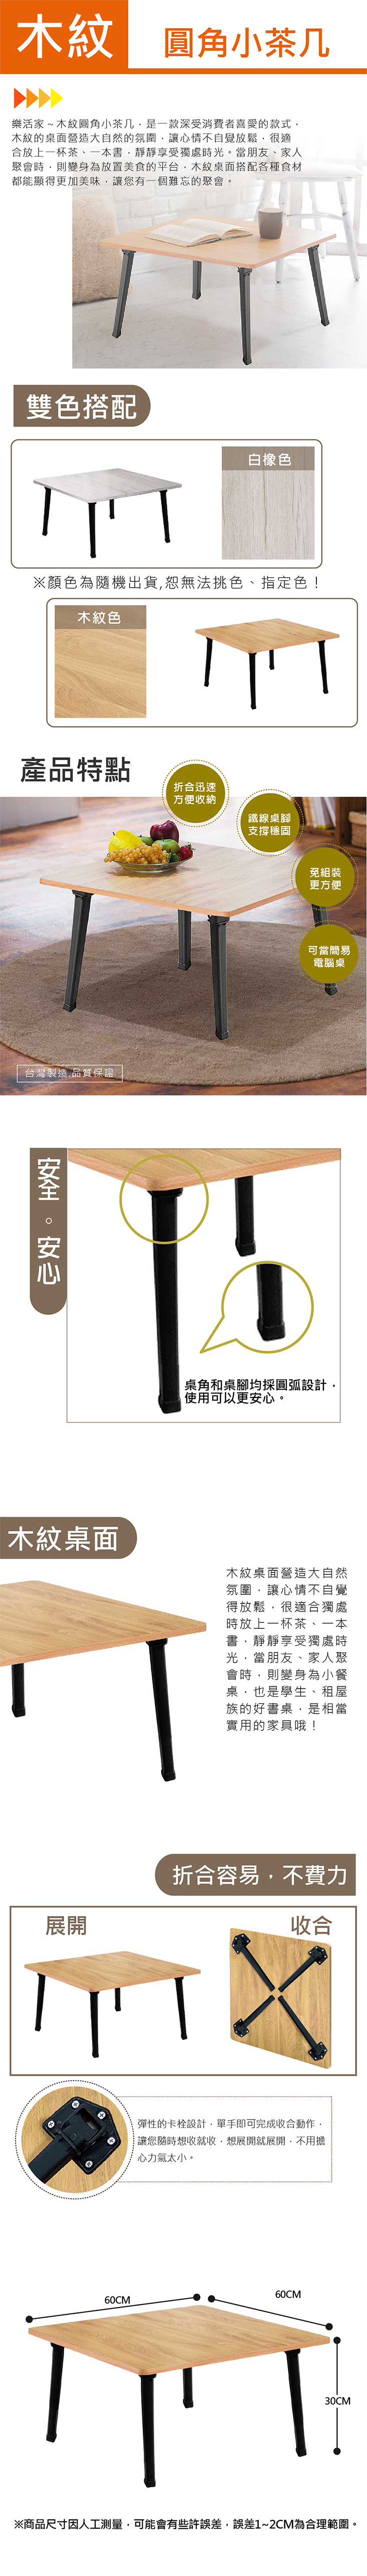 MIT日式方型休閒桌 折合迅速 方便收納 免組裝 支撐穩固W60xD60xH30